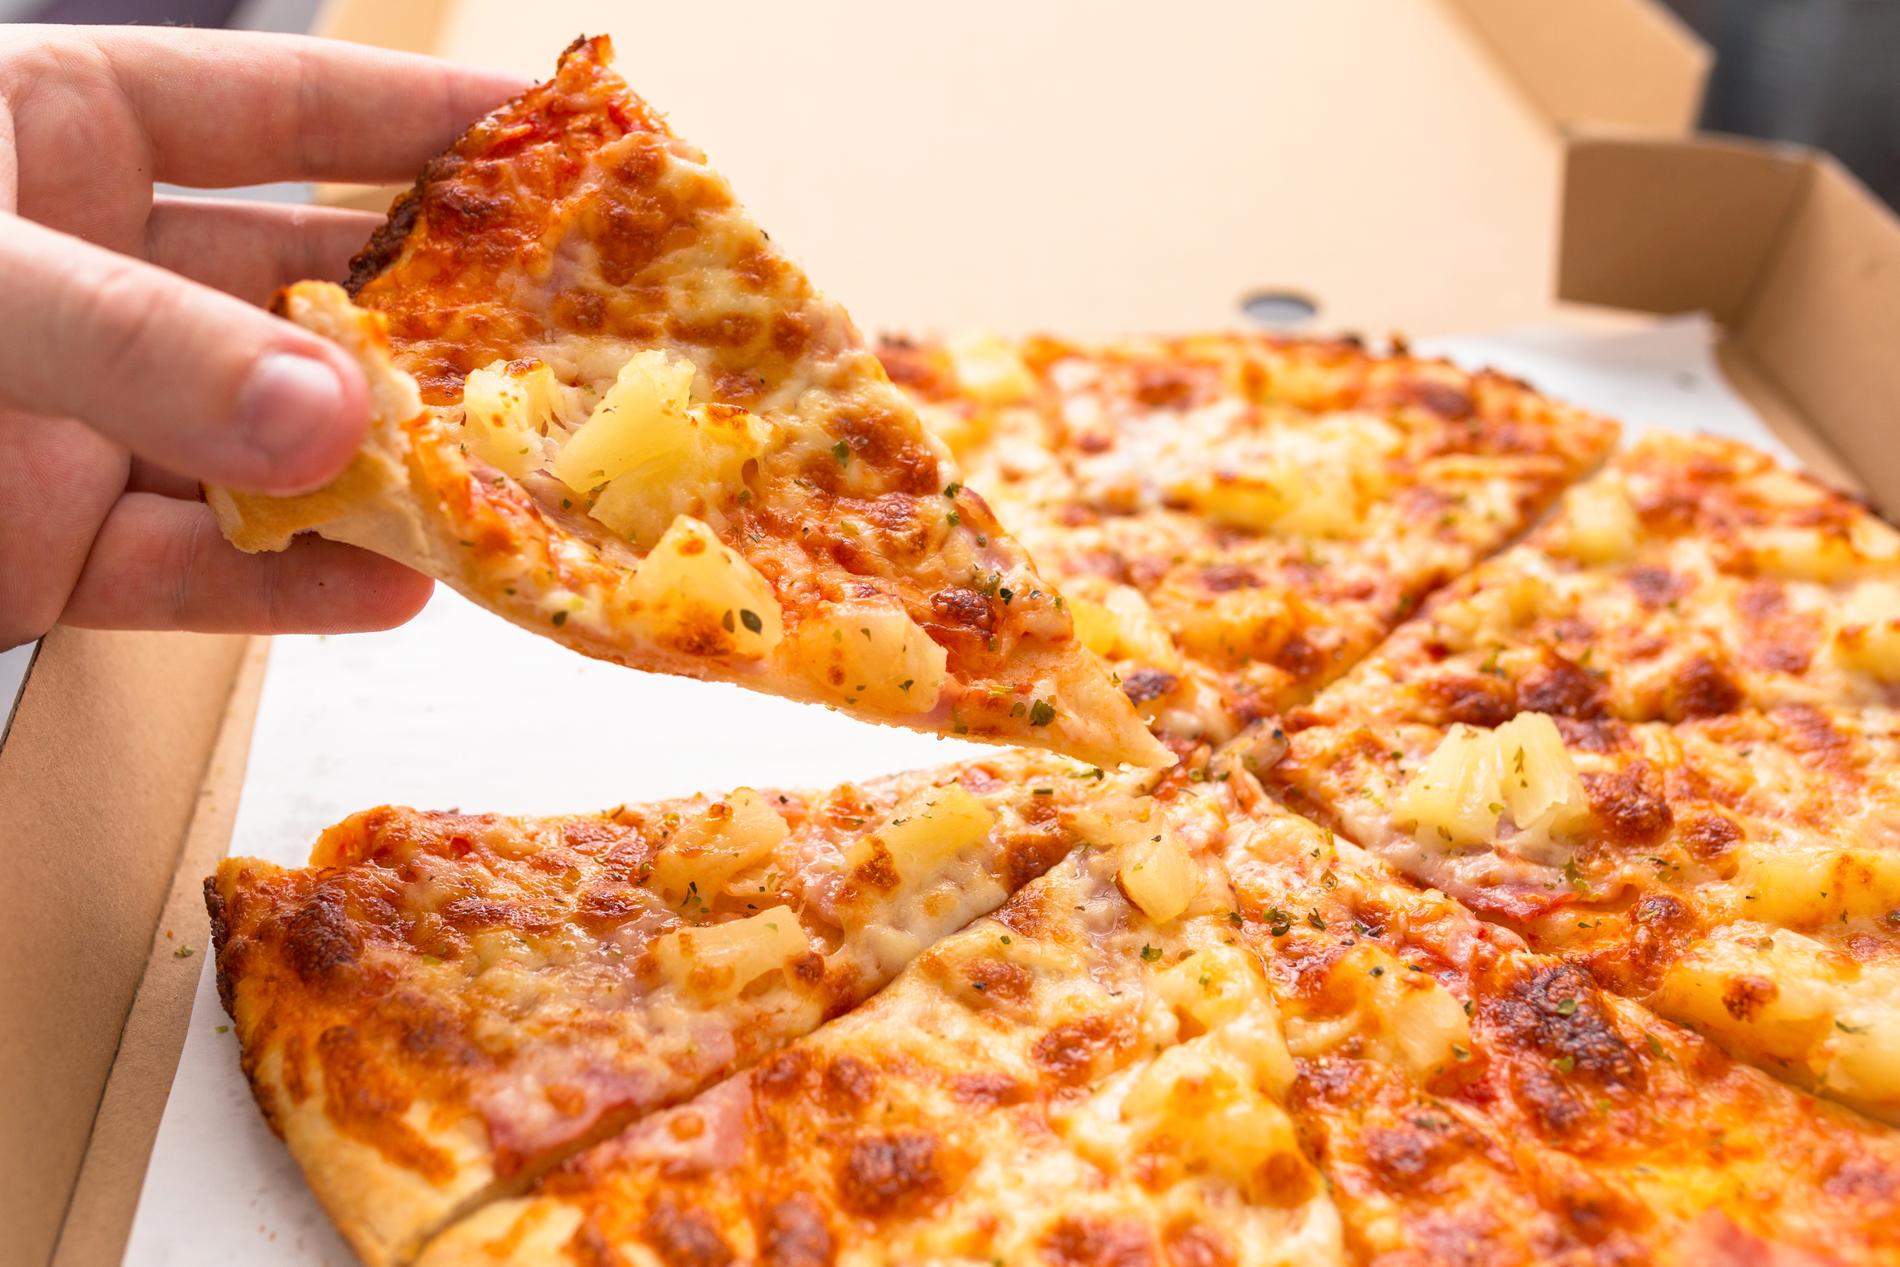 Ananas på pizza är alltid en aktuell och högst viktig debatt, som många är oense om.